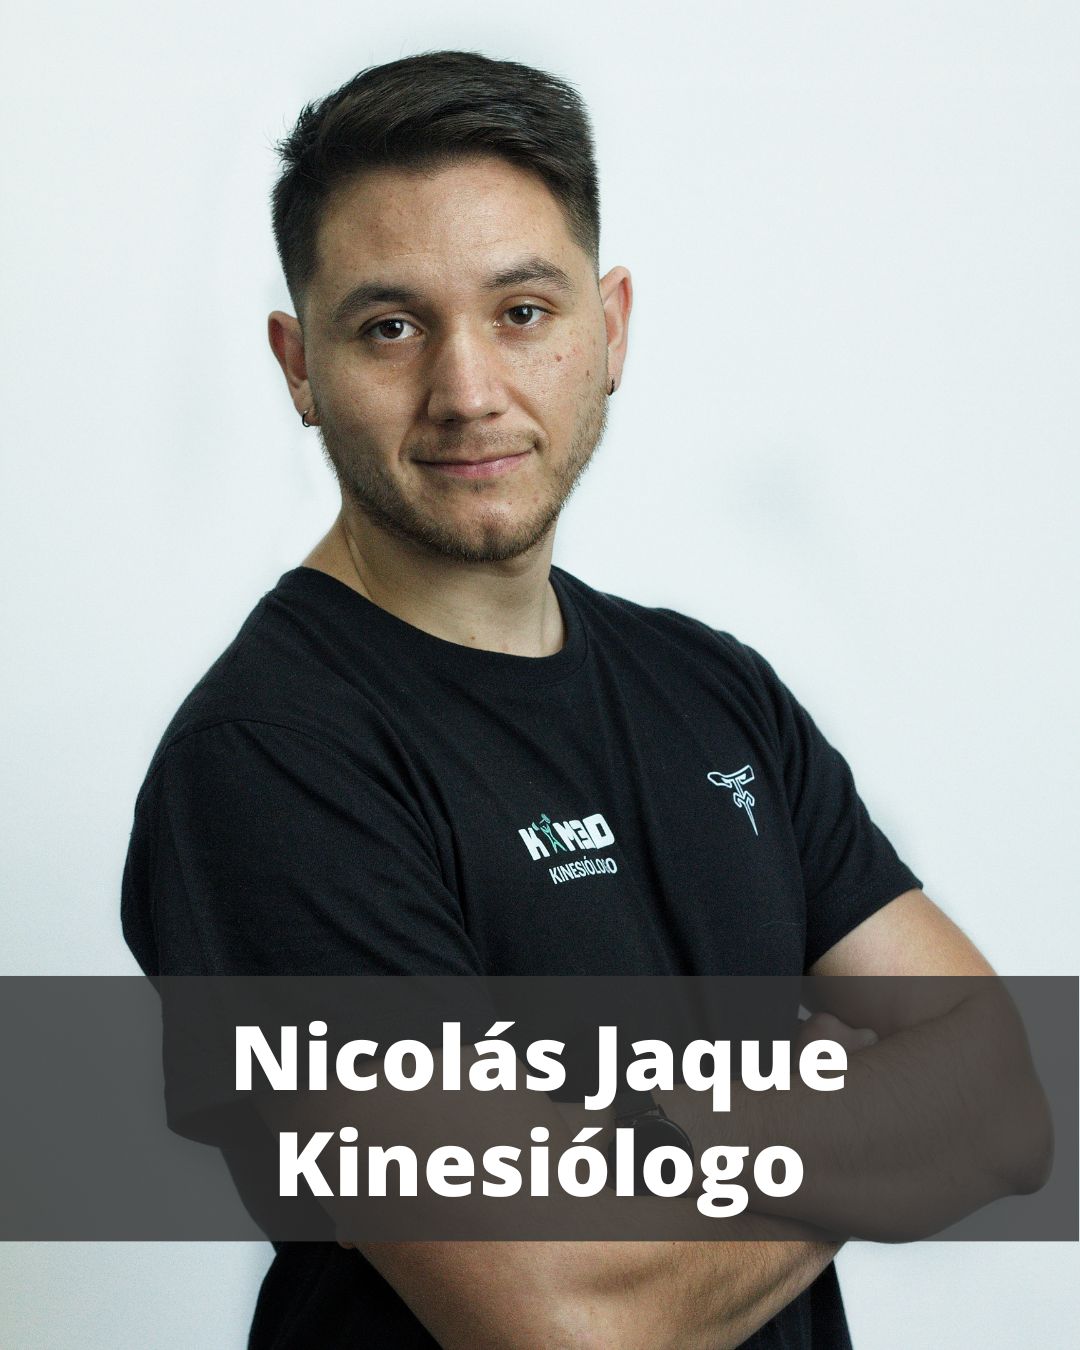 Nicolás Jaque kinesiologo